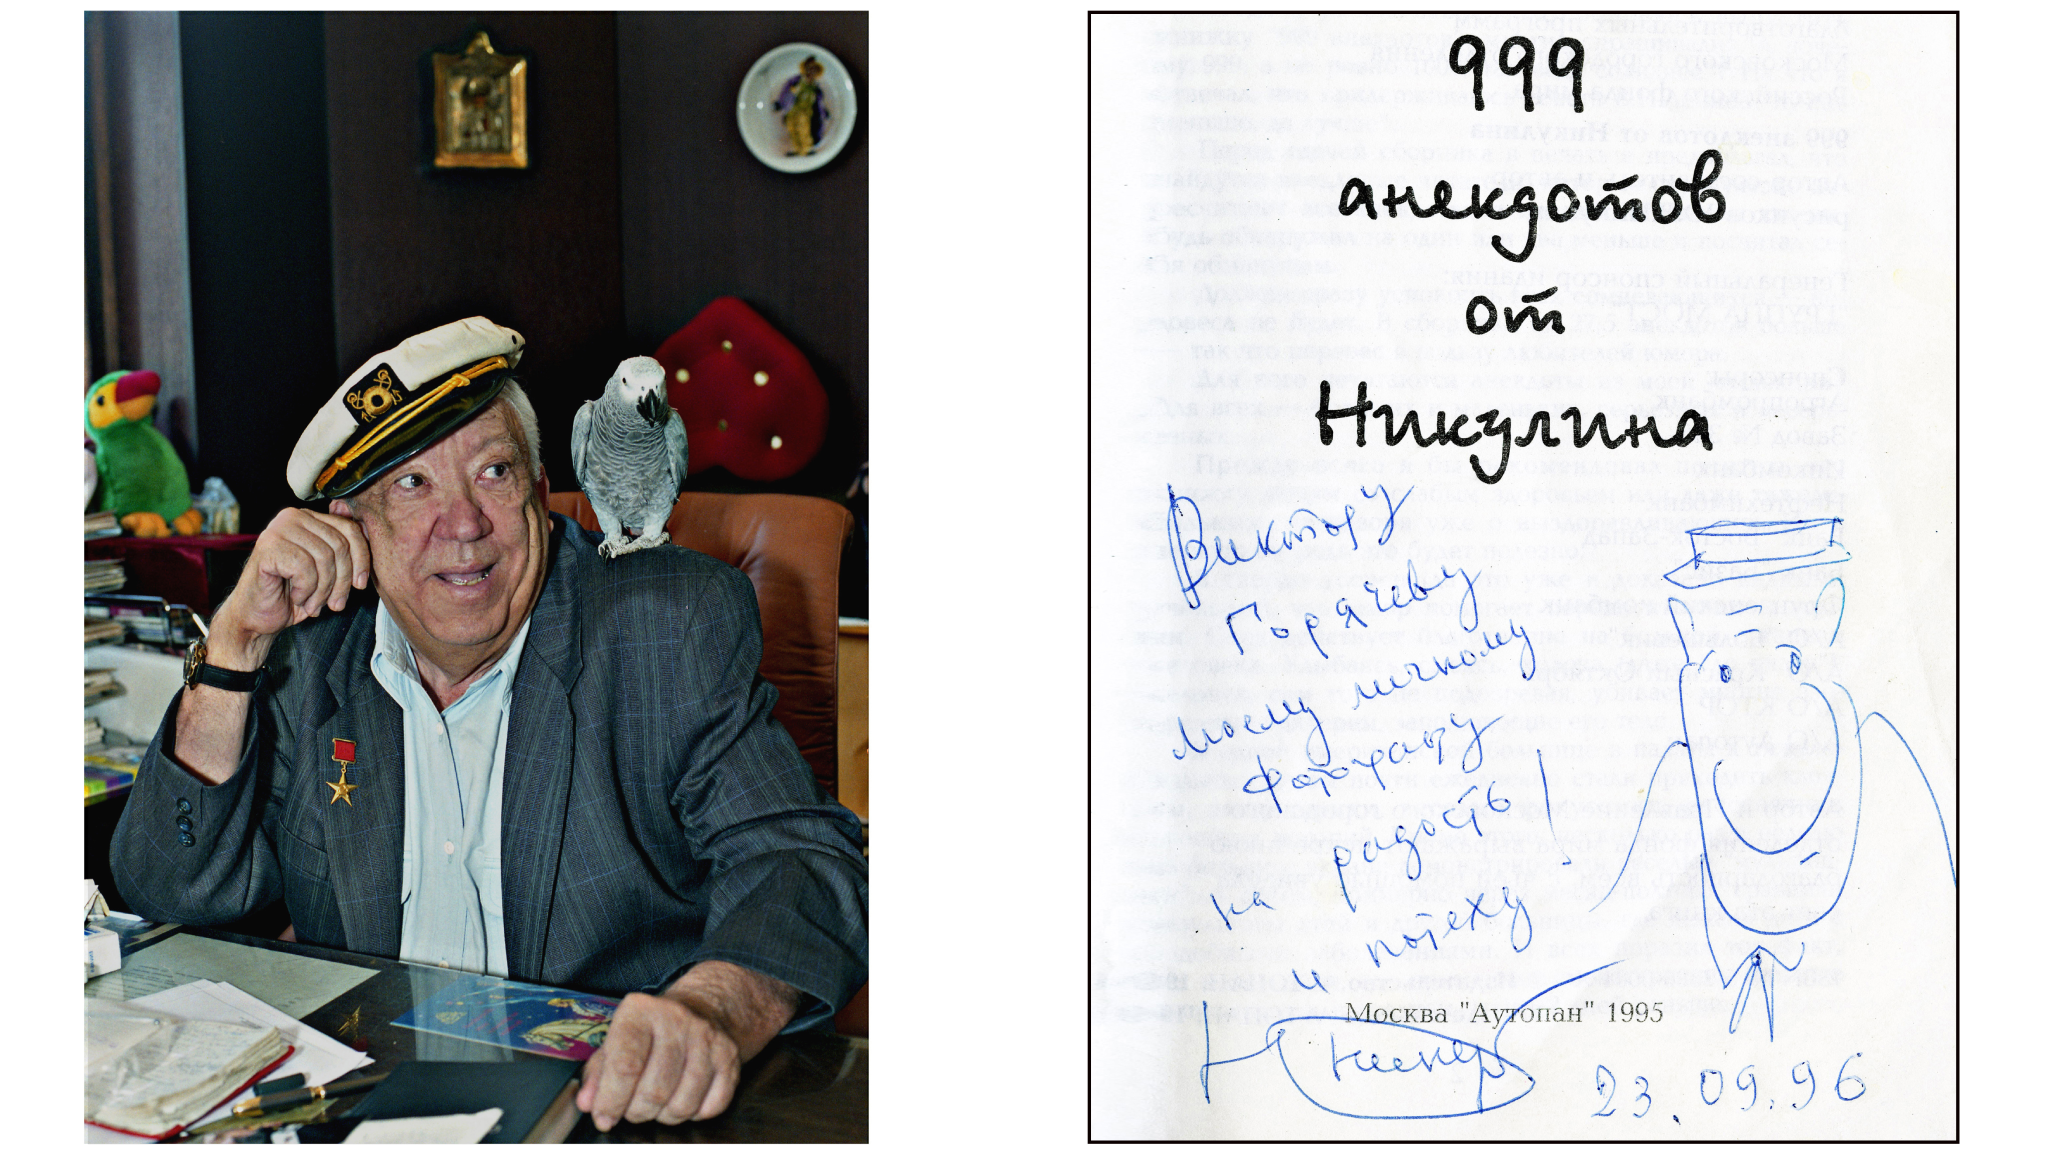 Книга «999 анекдотов от Никулина» с автографом